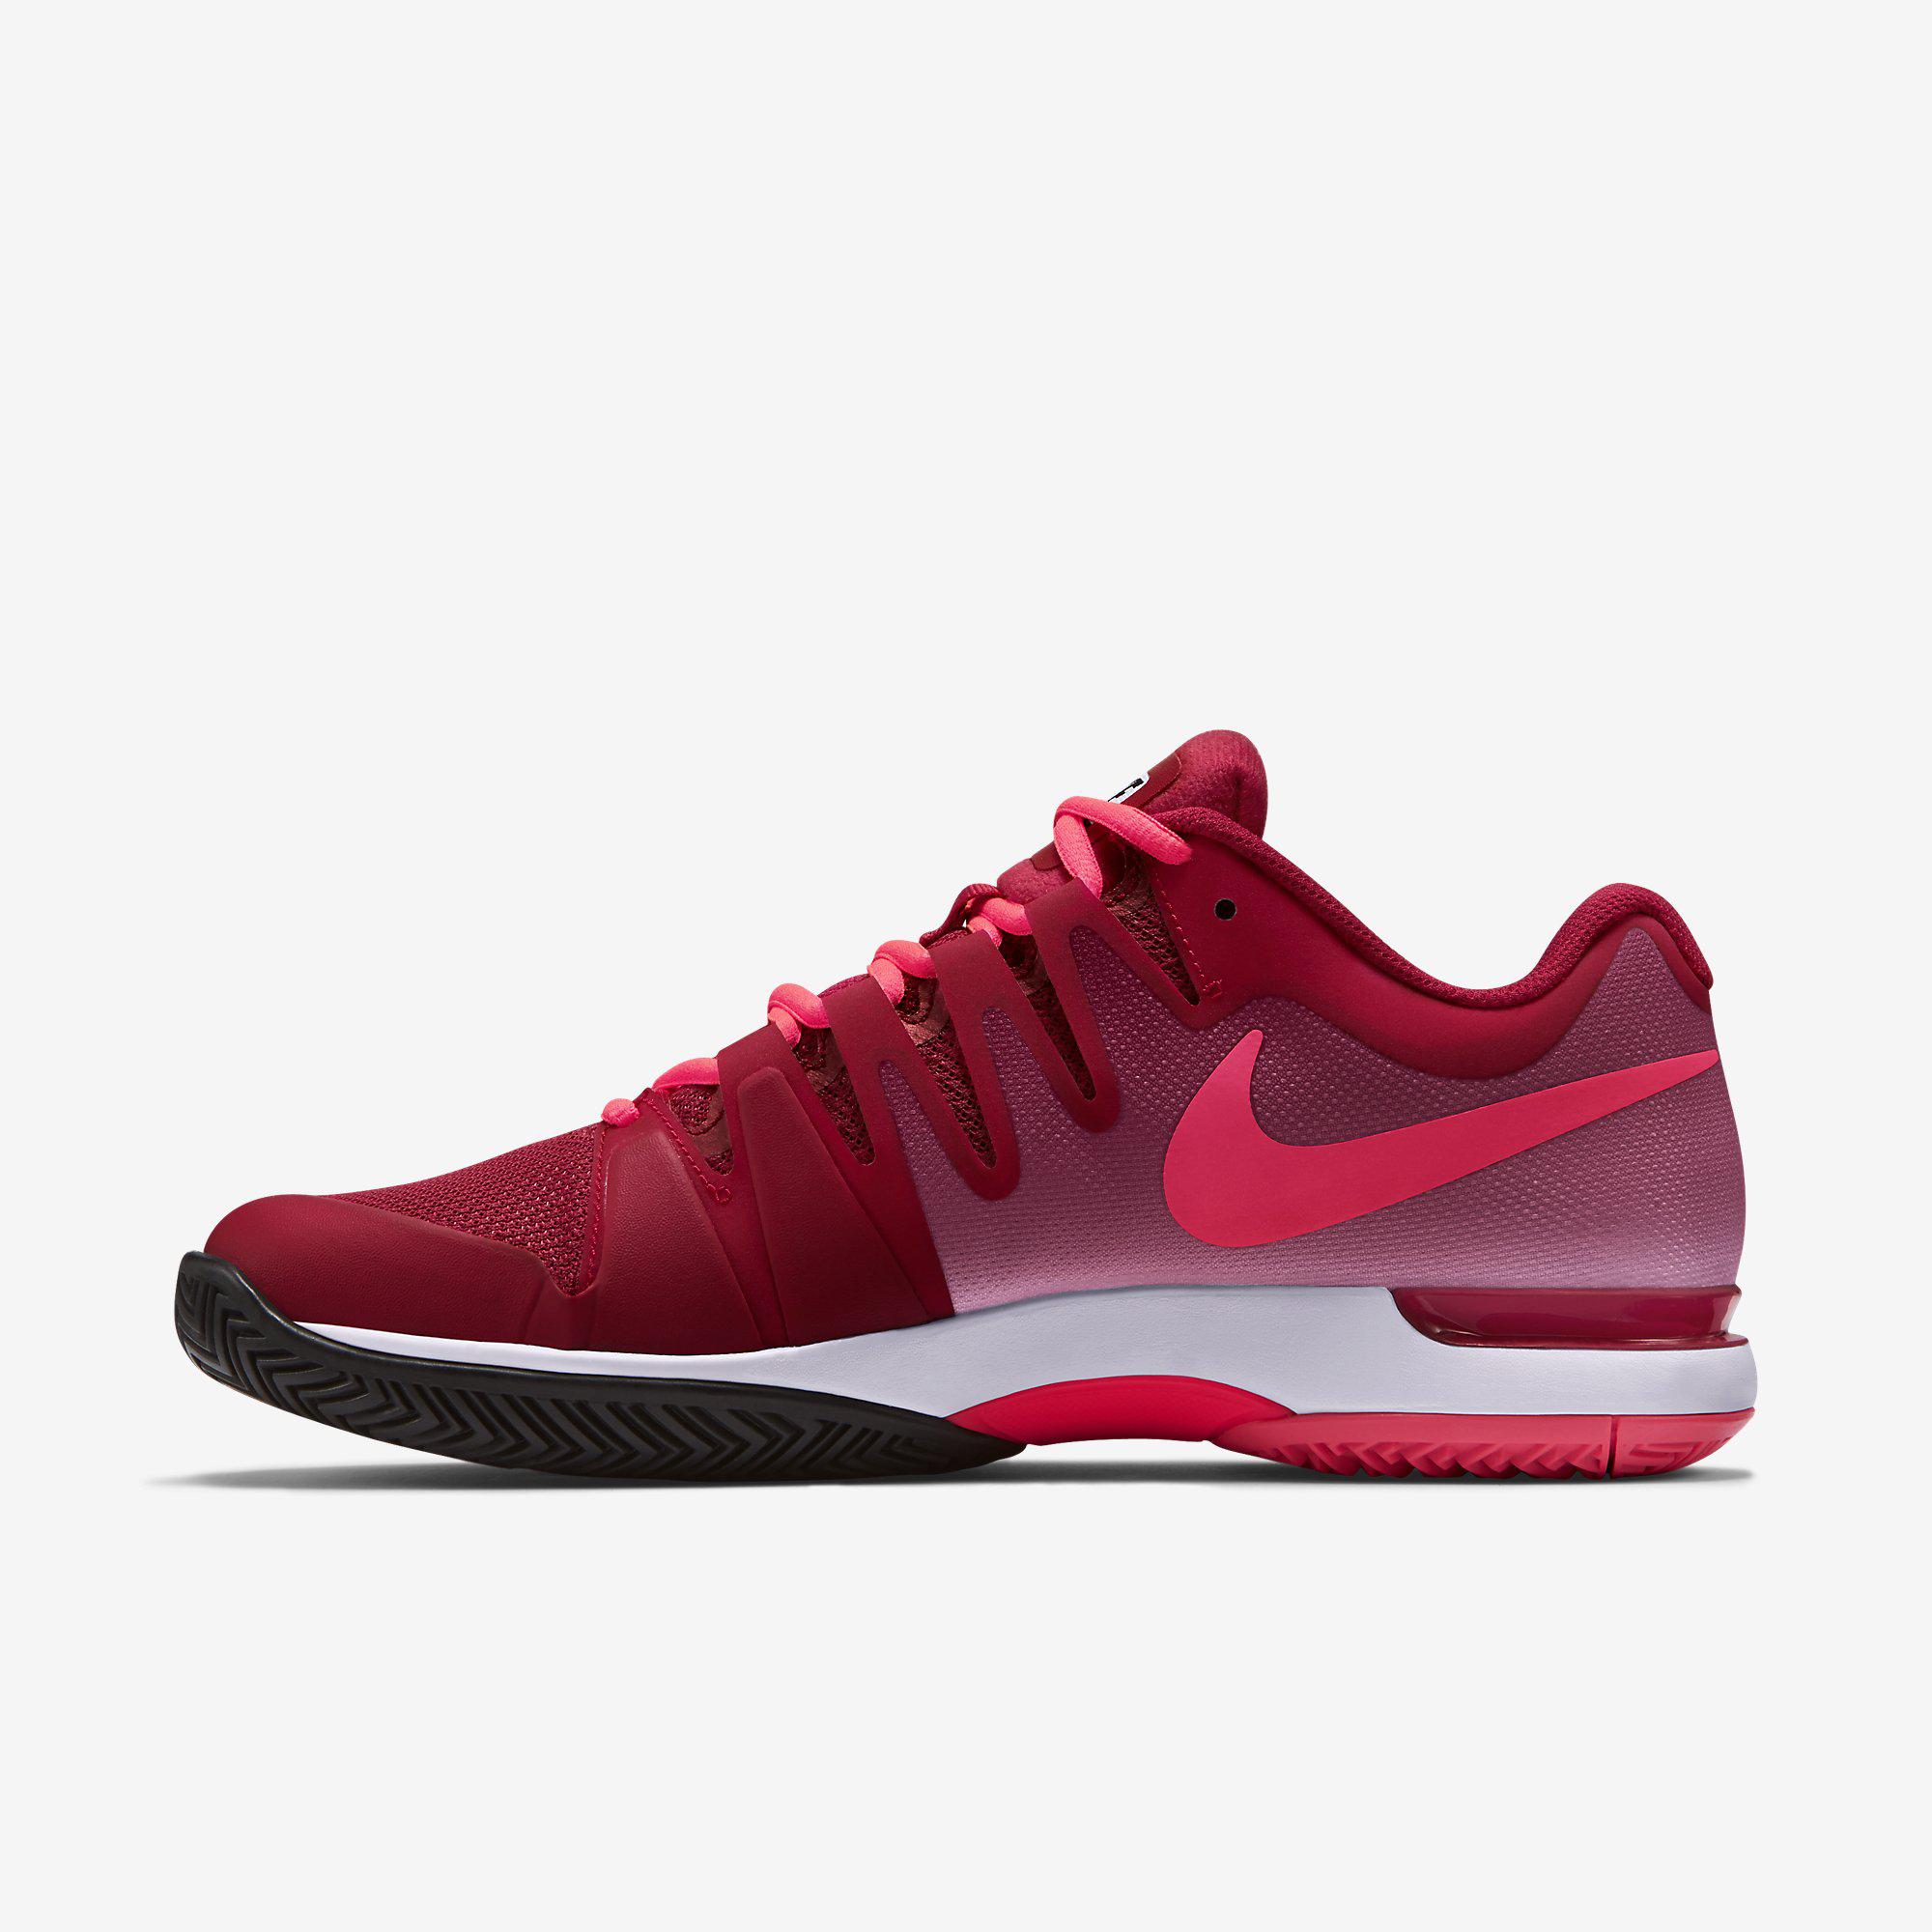 Nike Mens Zoom Vapor 9.5 Tour Tennis Shoes - Gym Red/White - Tennisnuts.com